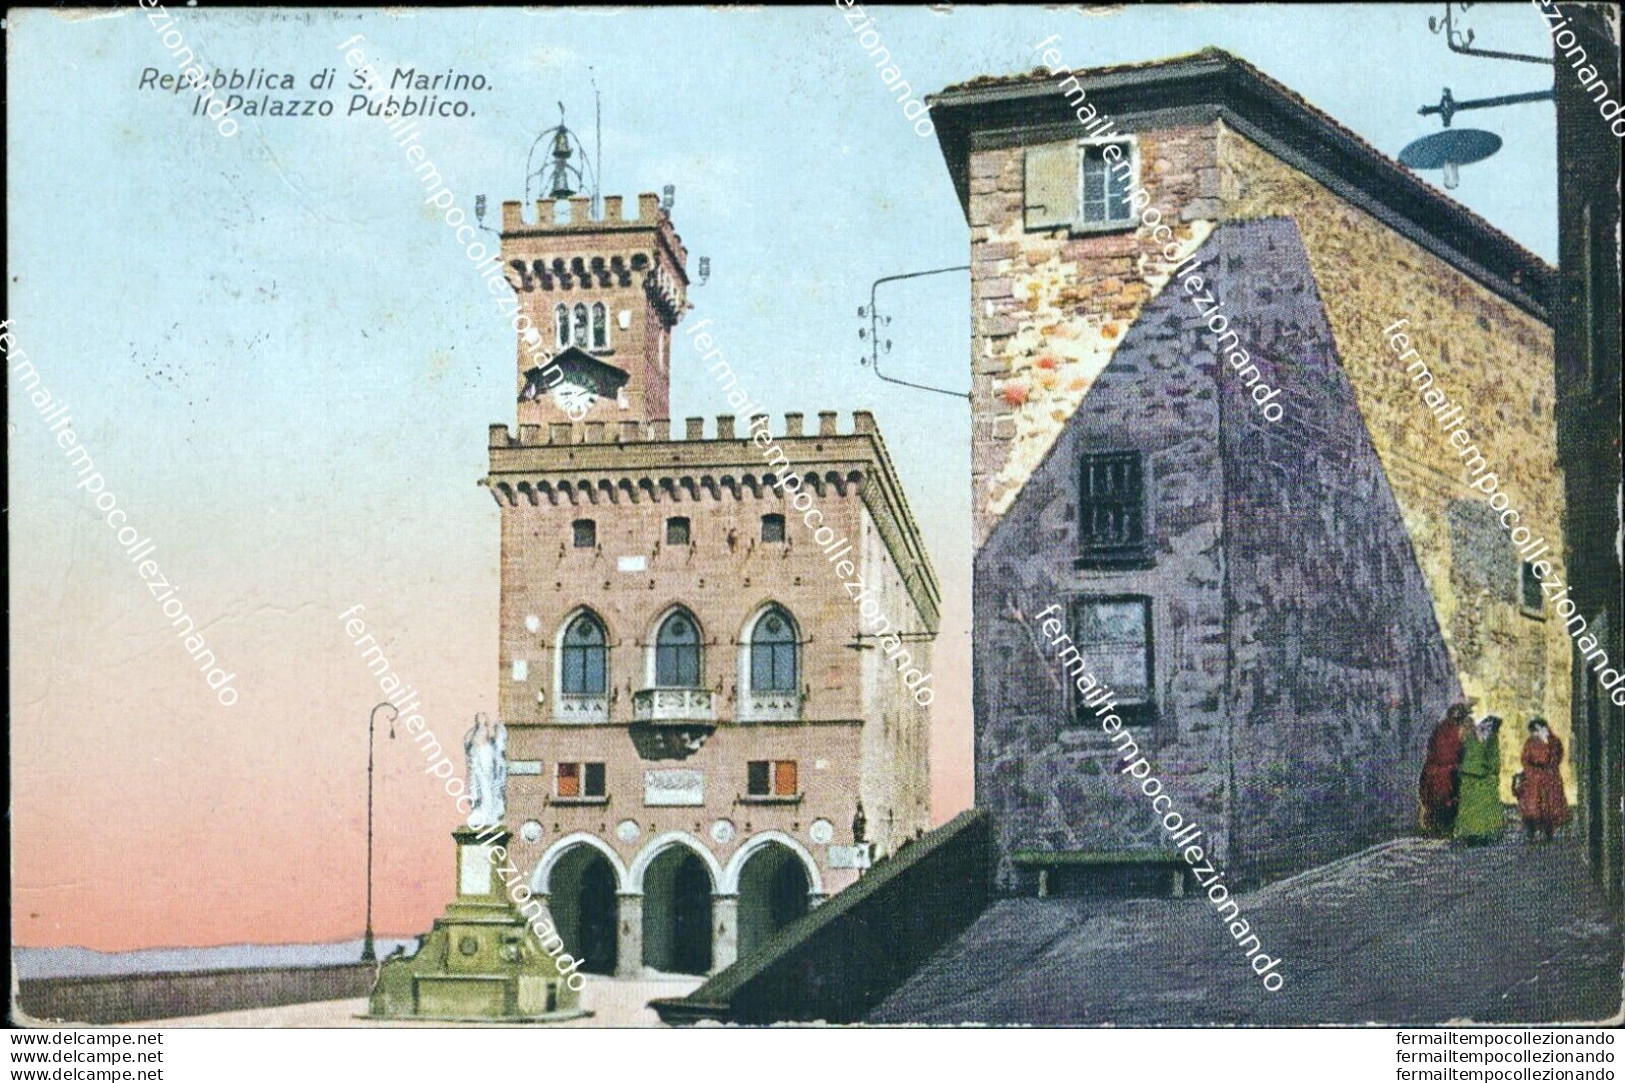 Bc315 Cartolina Repubblica Di San Marino Il Palazzo Pubblico - Saint-Marin